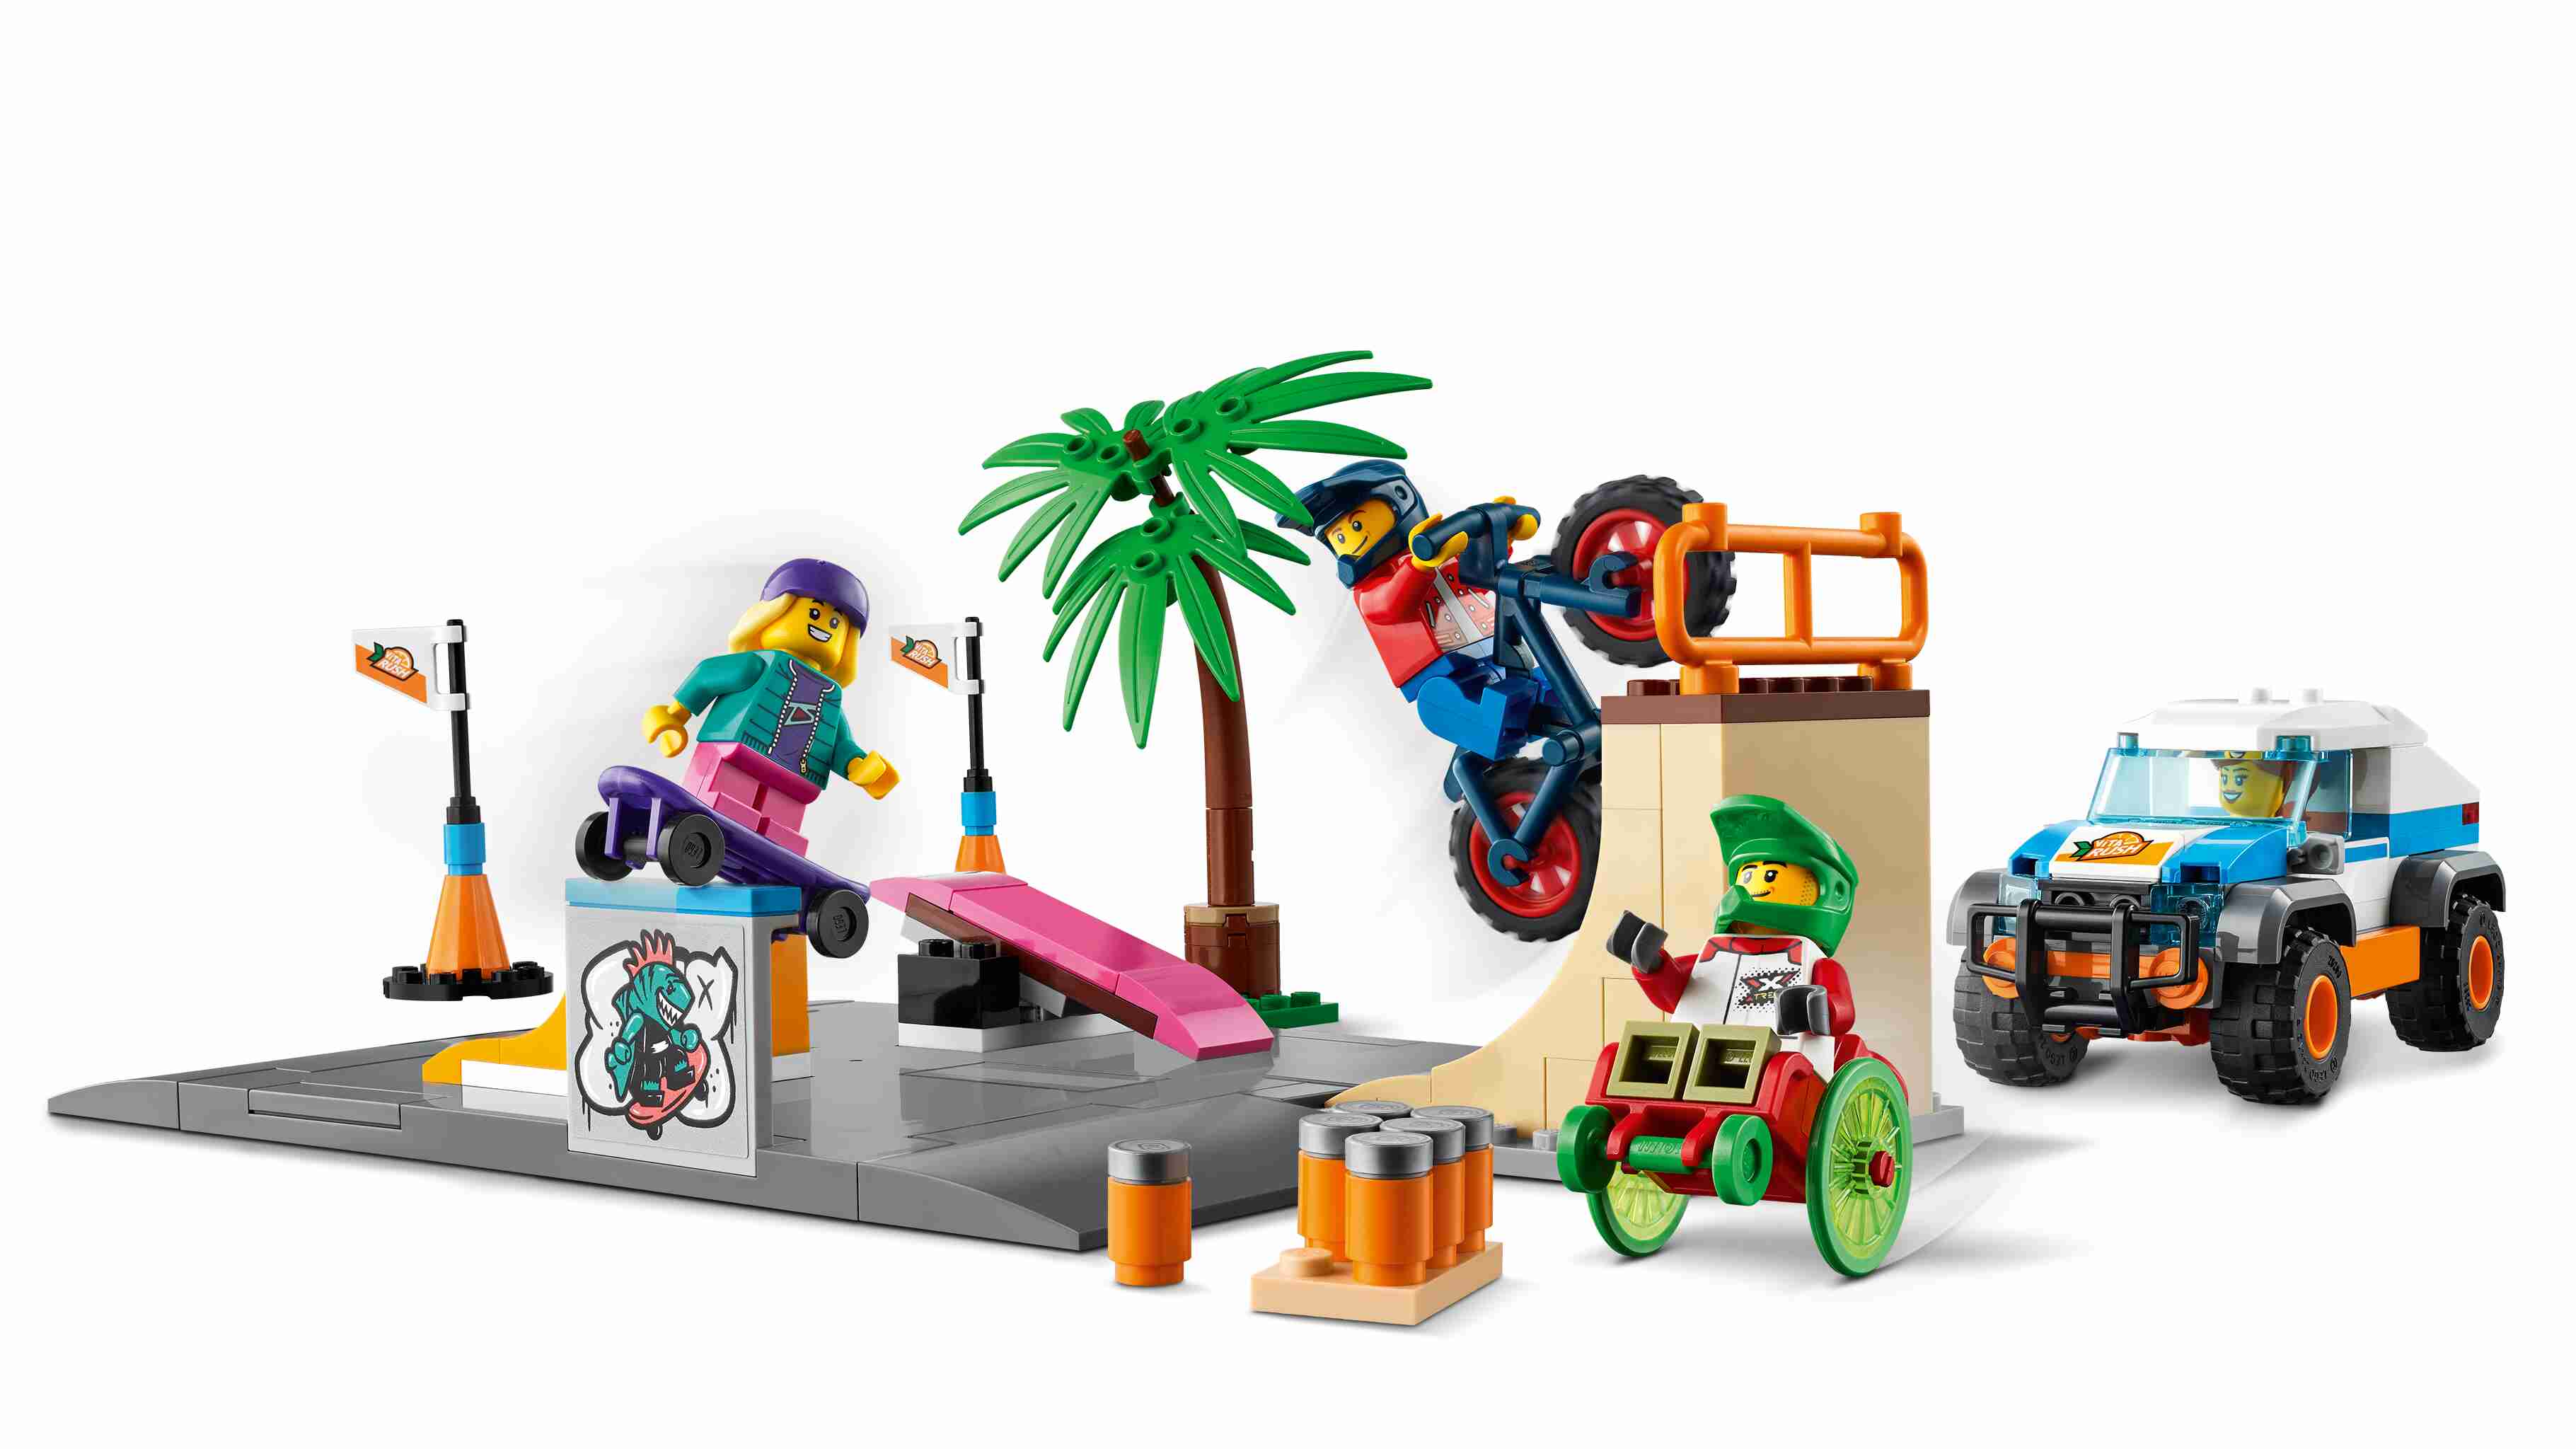 LEGO 60290 City Skate Park mit 4 Figuren, Auto und BMX-Rad